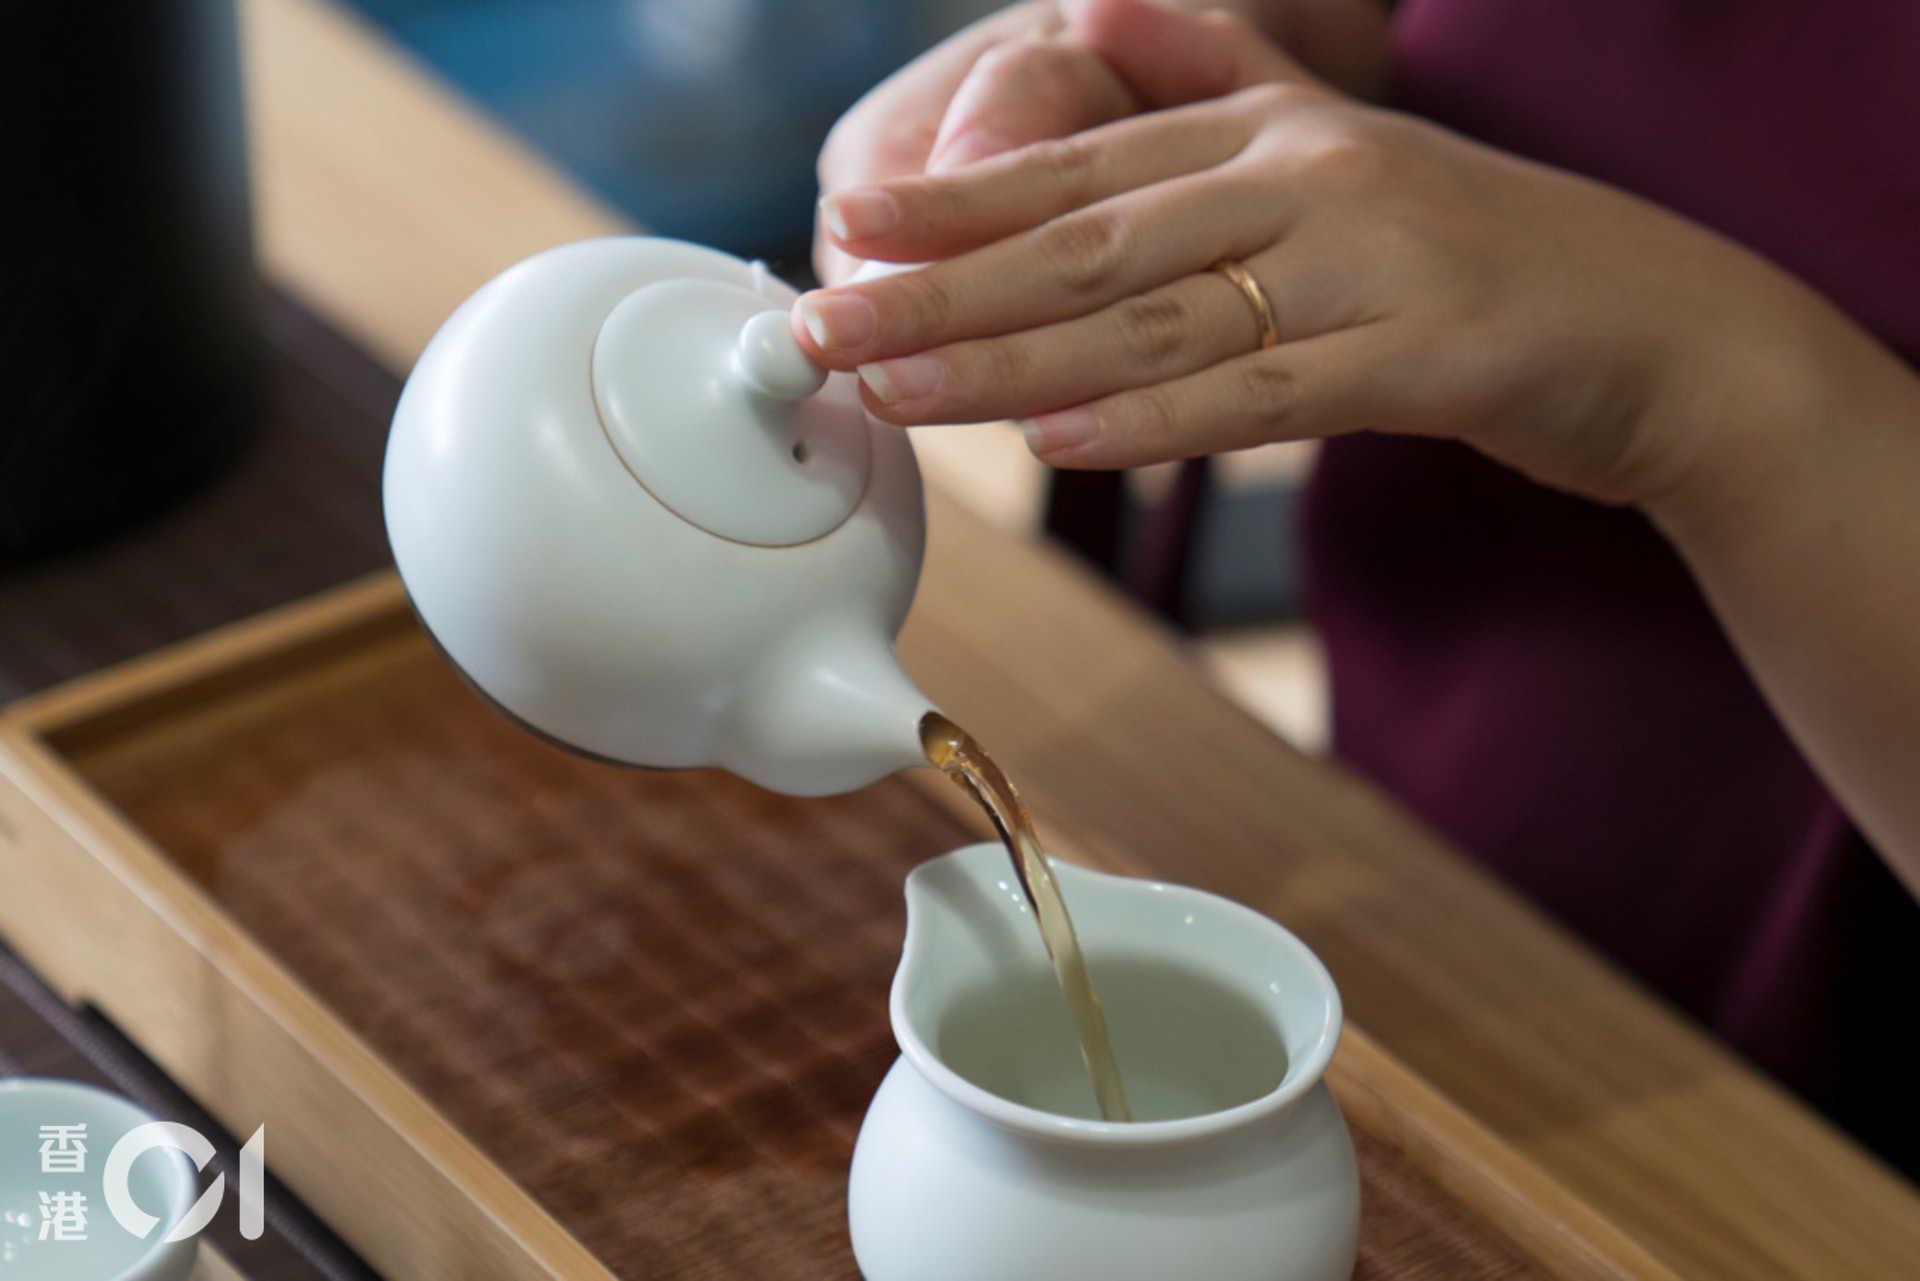 分茶，倒茶湯入公道壺準備分茶。如果你自己想喝大杯，現在可以享用了。